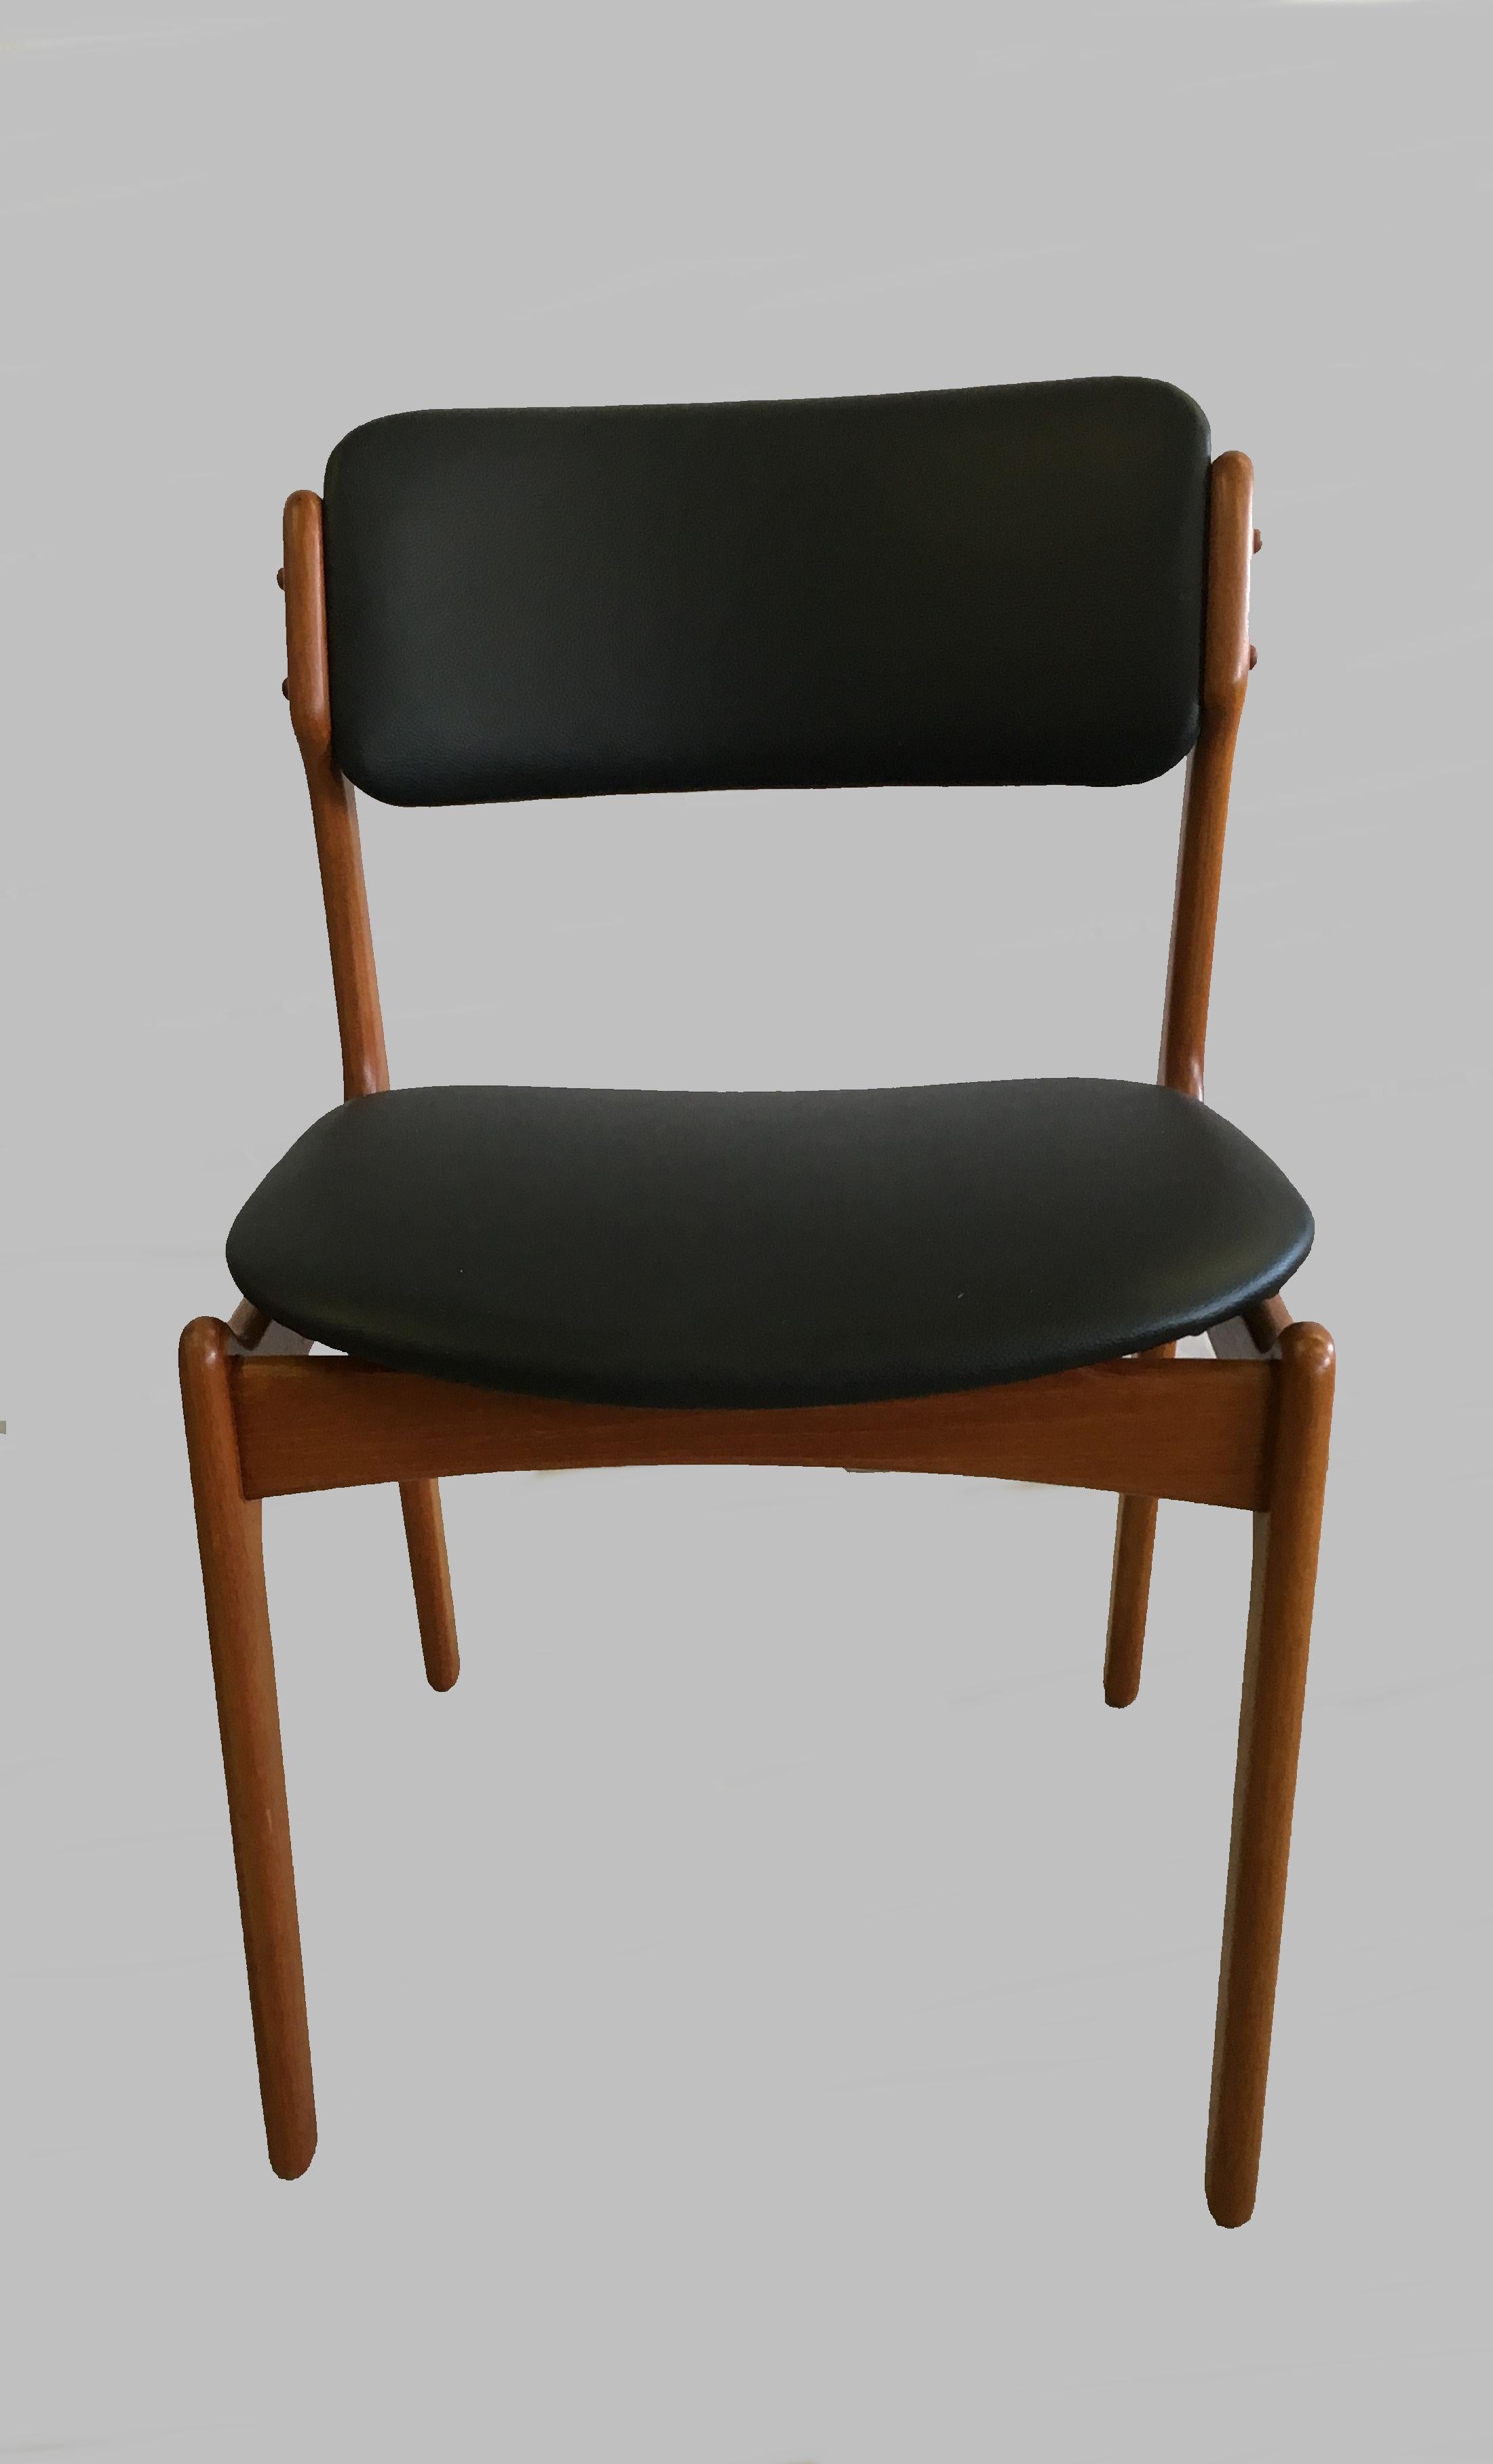 Ensemble de six chaises de salle à manger en teck des années 1960 avec assise flottante, conçu par Erik Buch pour Oddense Maskinsnedkeri en 1949.

Les chaises ont une construction simple mais solide avec des lignes élégantes et offrent une